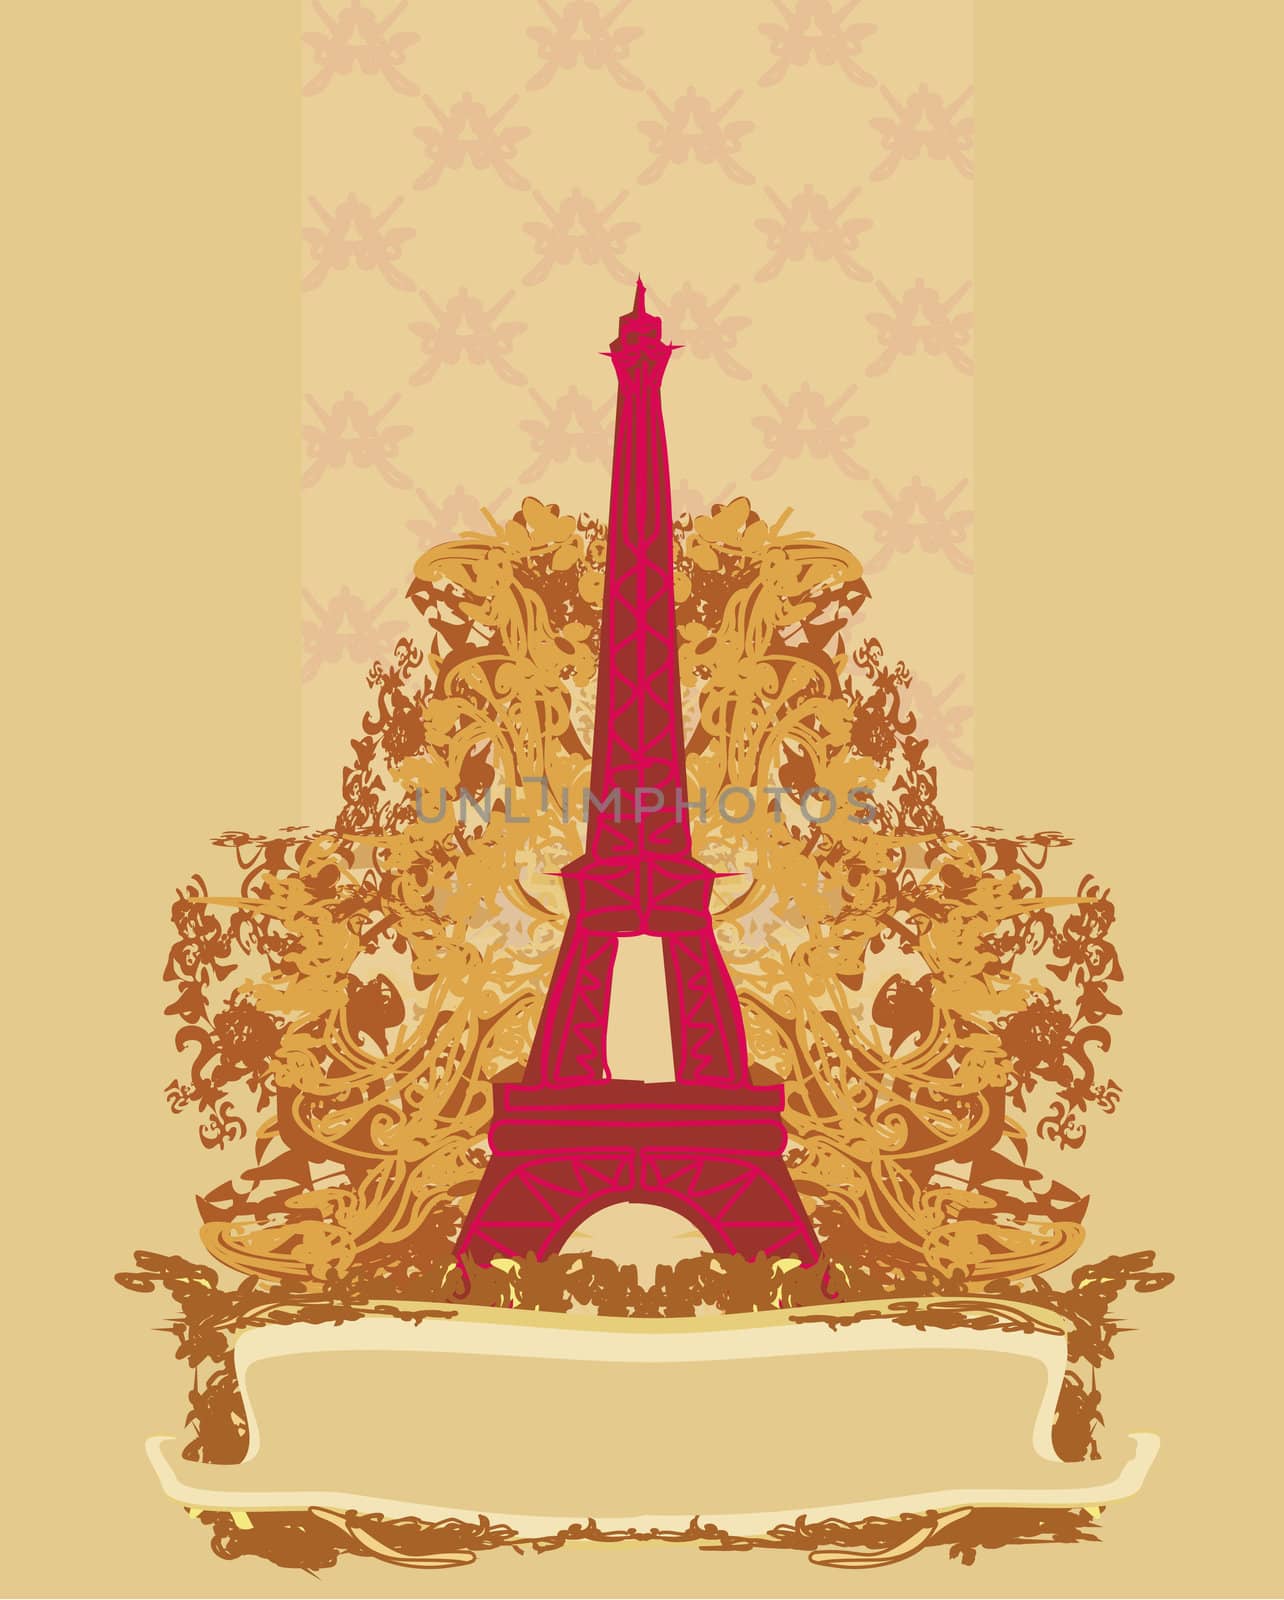 vintage retro Eiffel card